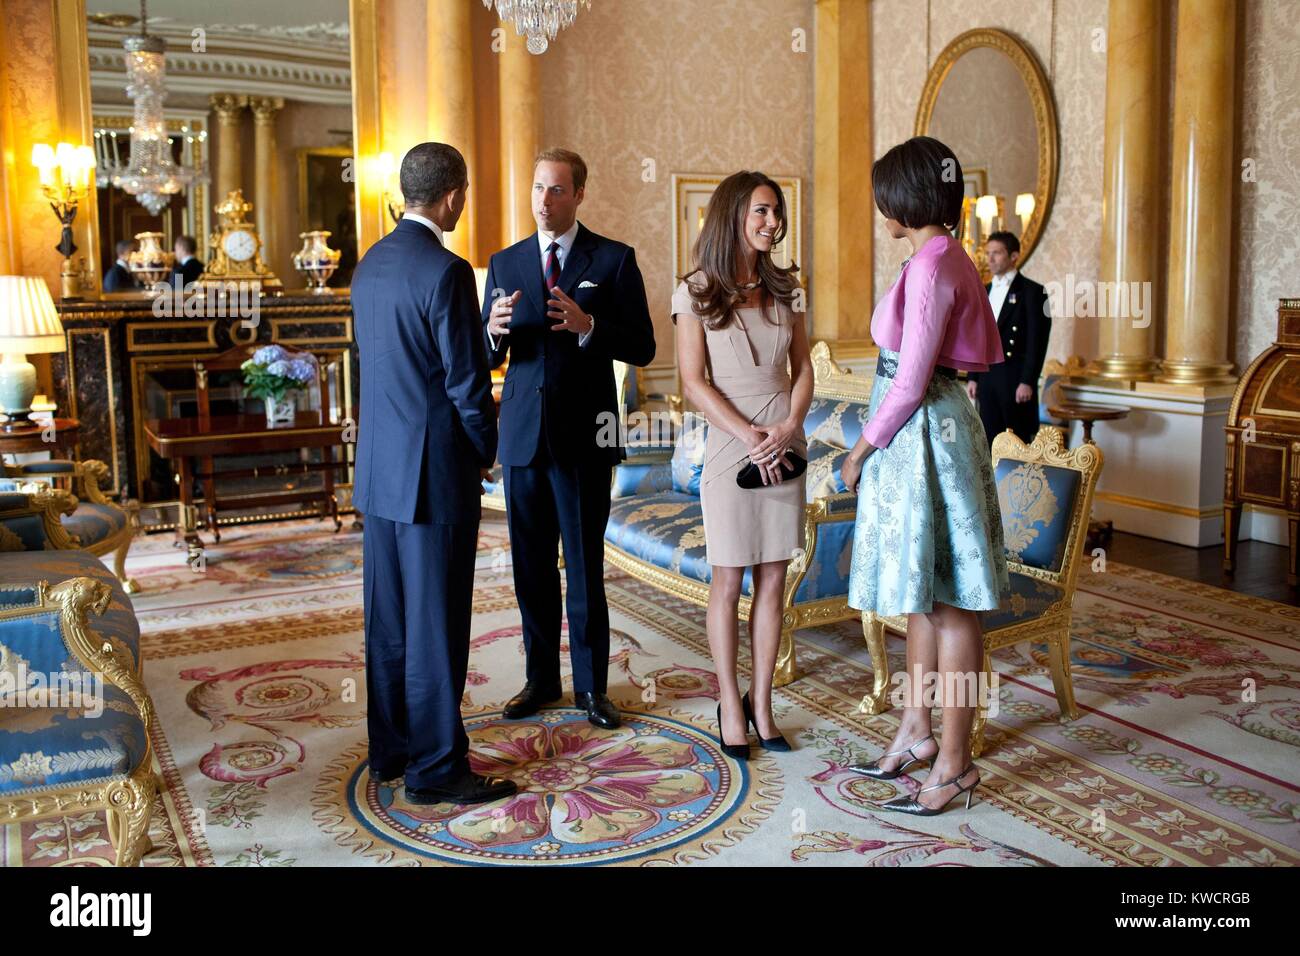 Präsident Barack Obama und der First Lady Michelle Obama mit der Herzog und die Herzogin von Cambridge. In der 1844 Zimmer im Buckingham Palace in London, England, 24. Mai 2011. (BSLOC 2015 3 224) Stockfoto